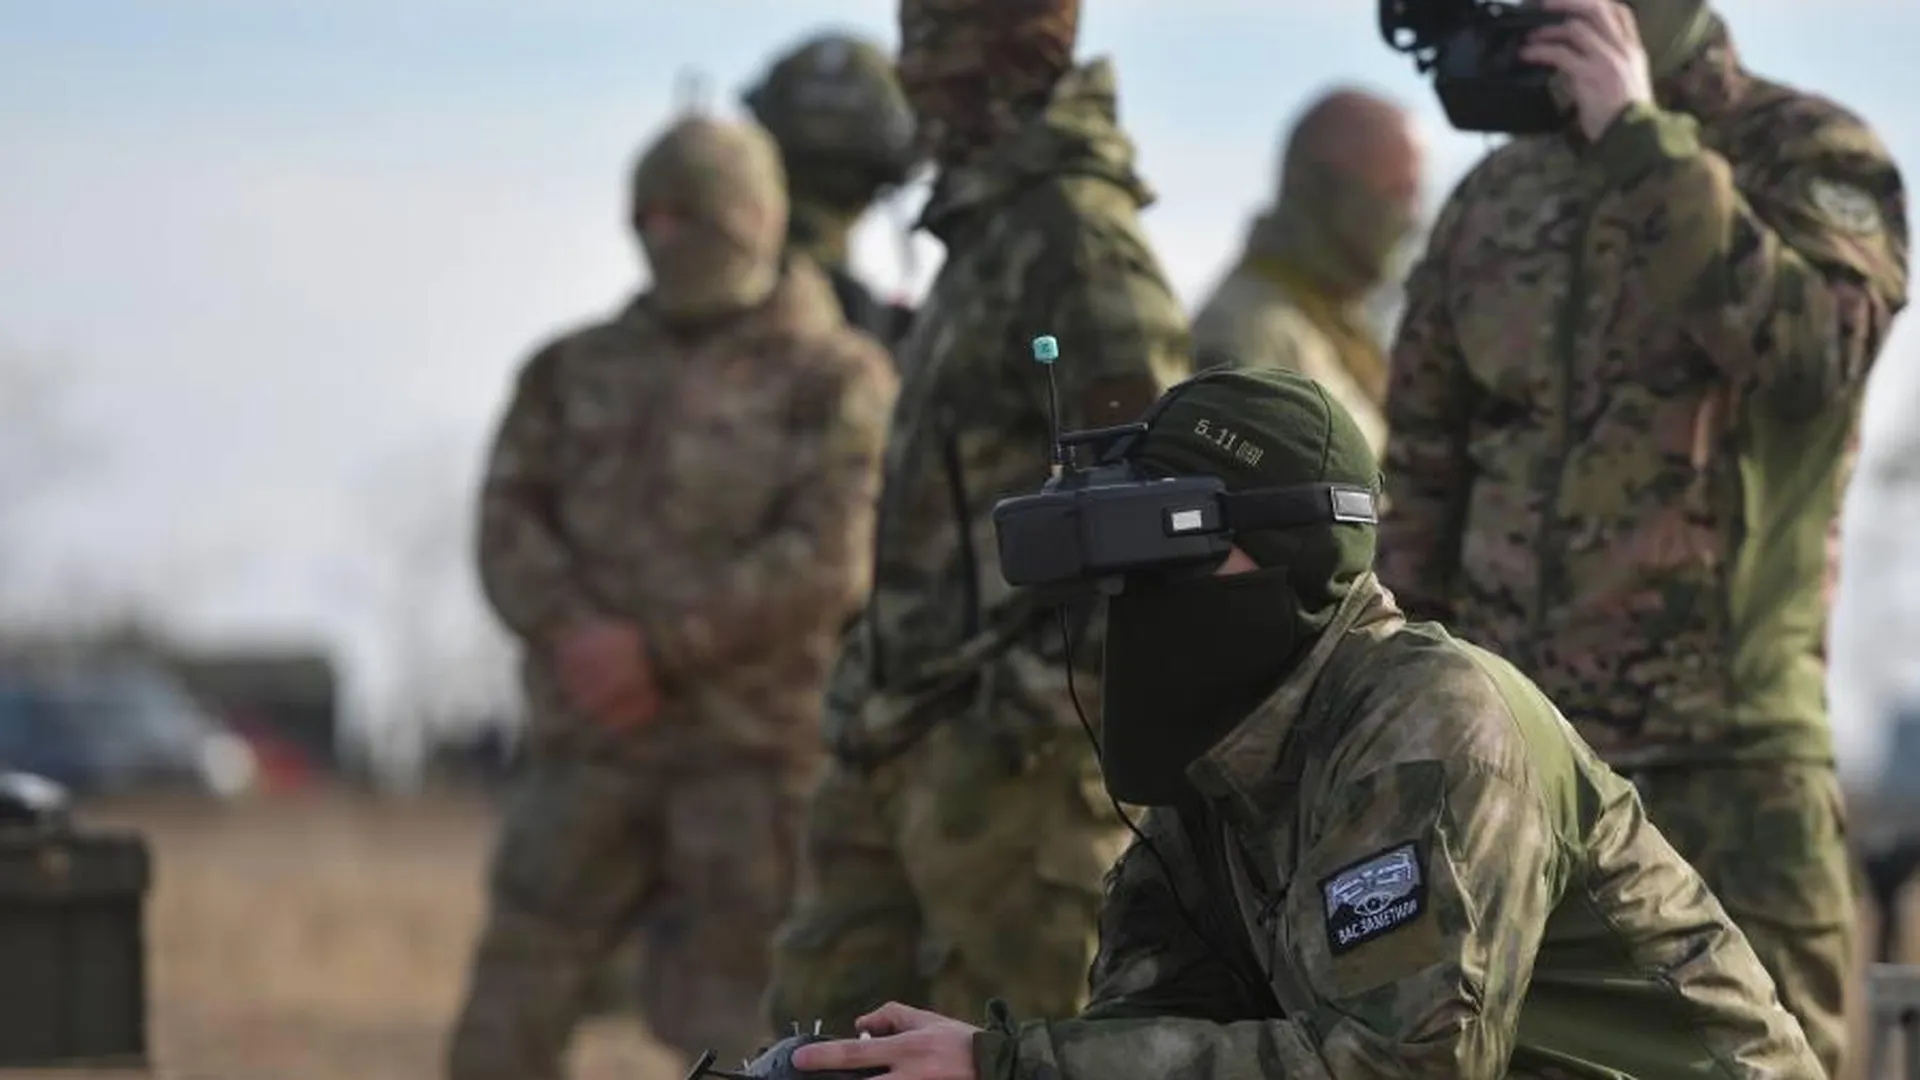 Военнослужащий ВС РФ проходит обучение по полетам на ударных FPV-дронах